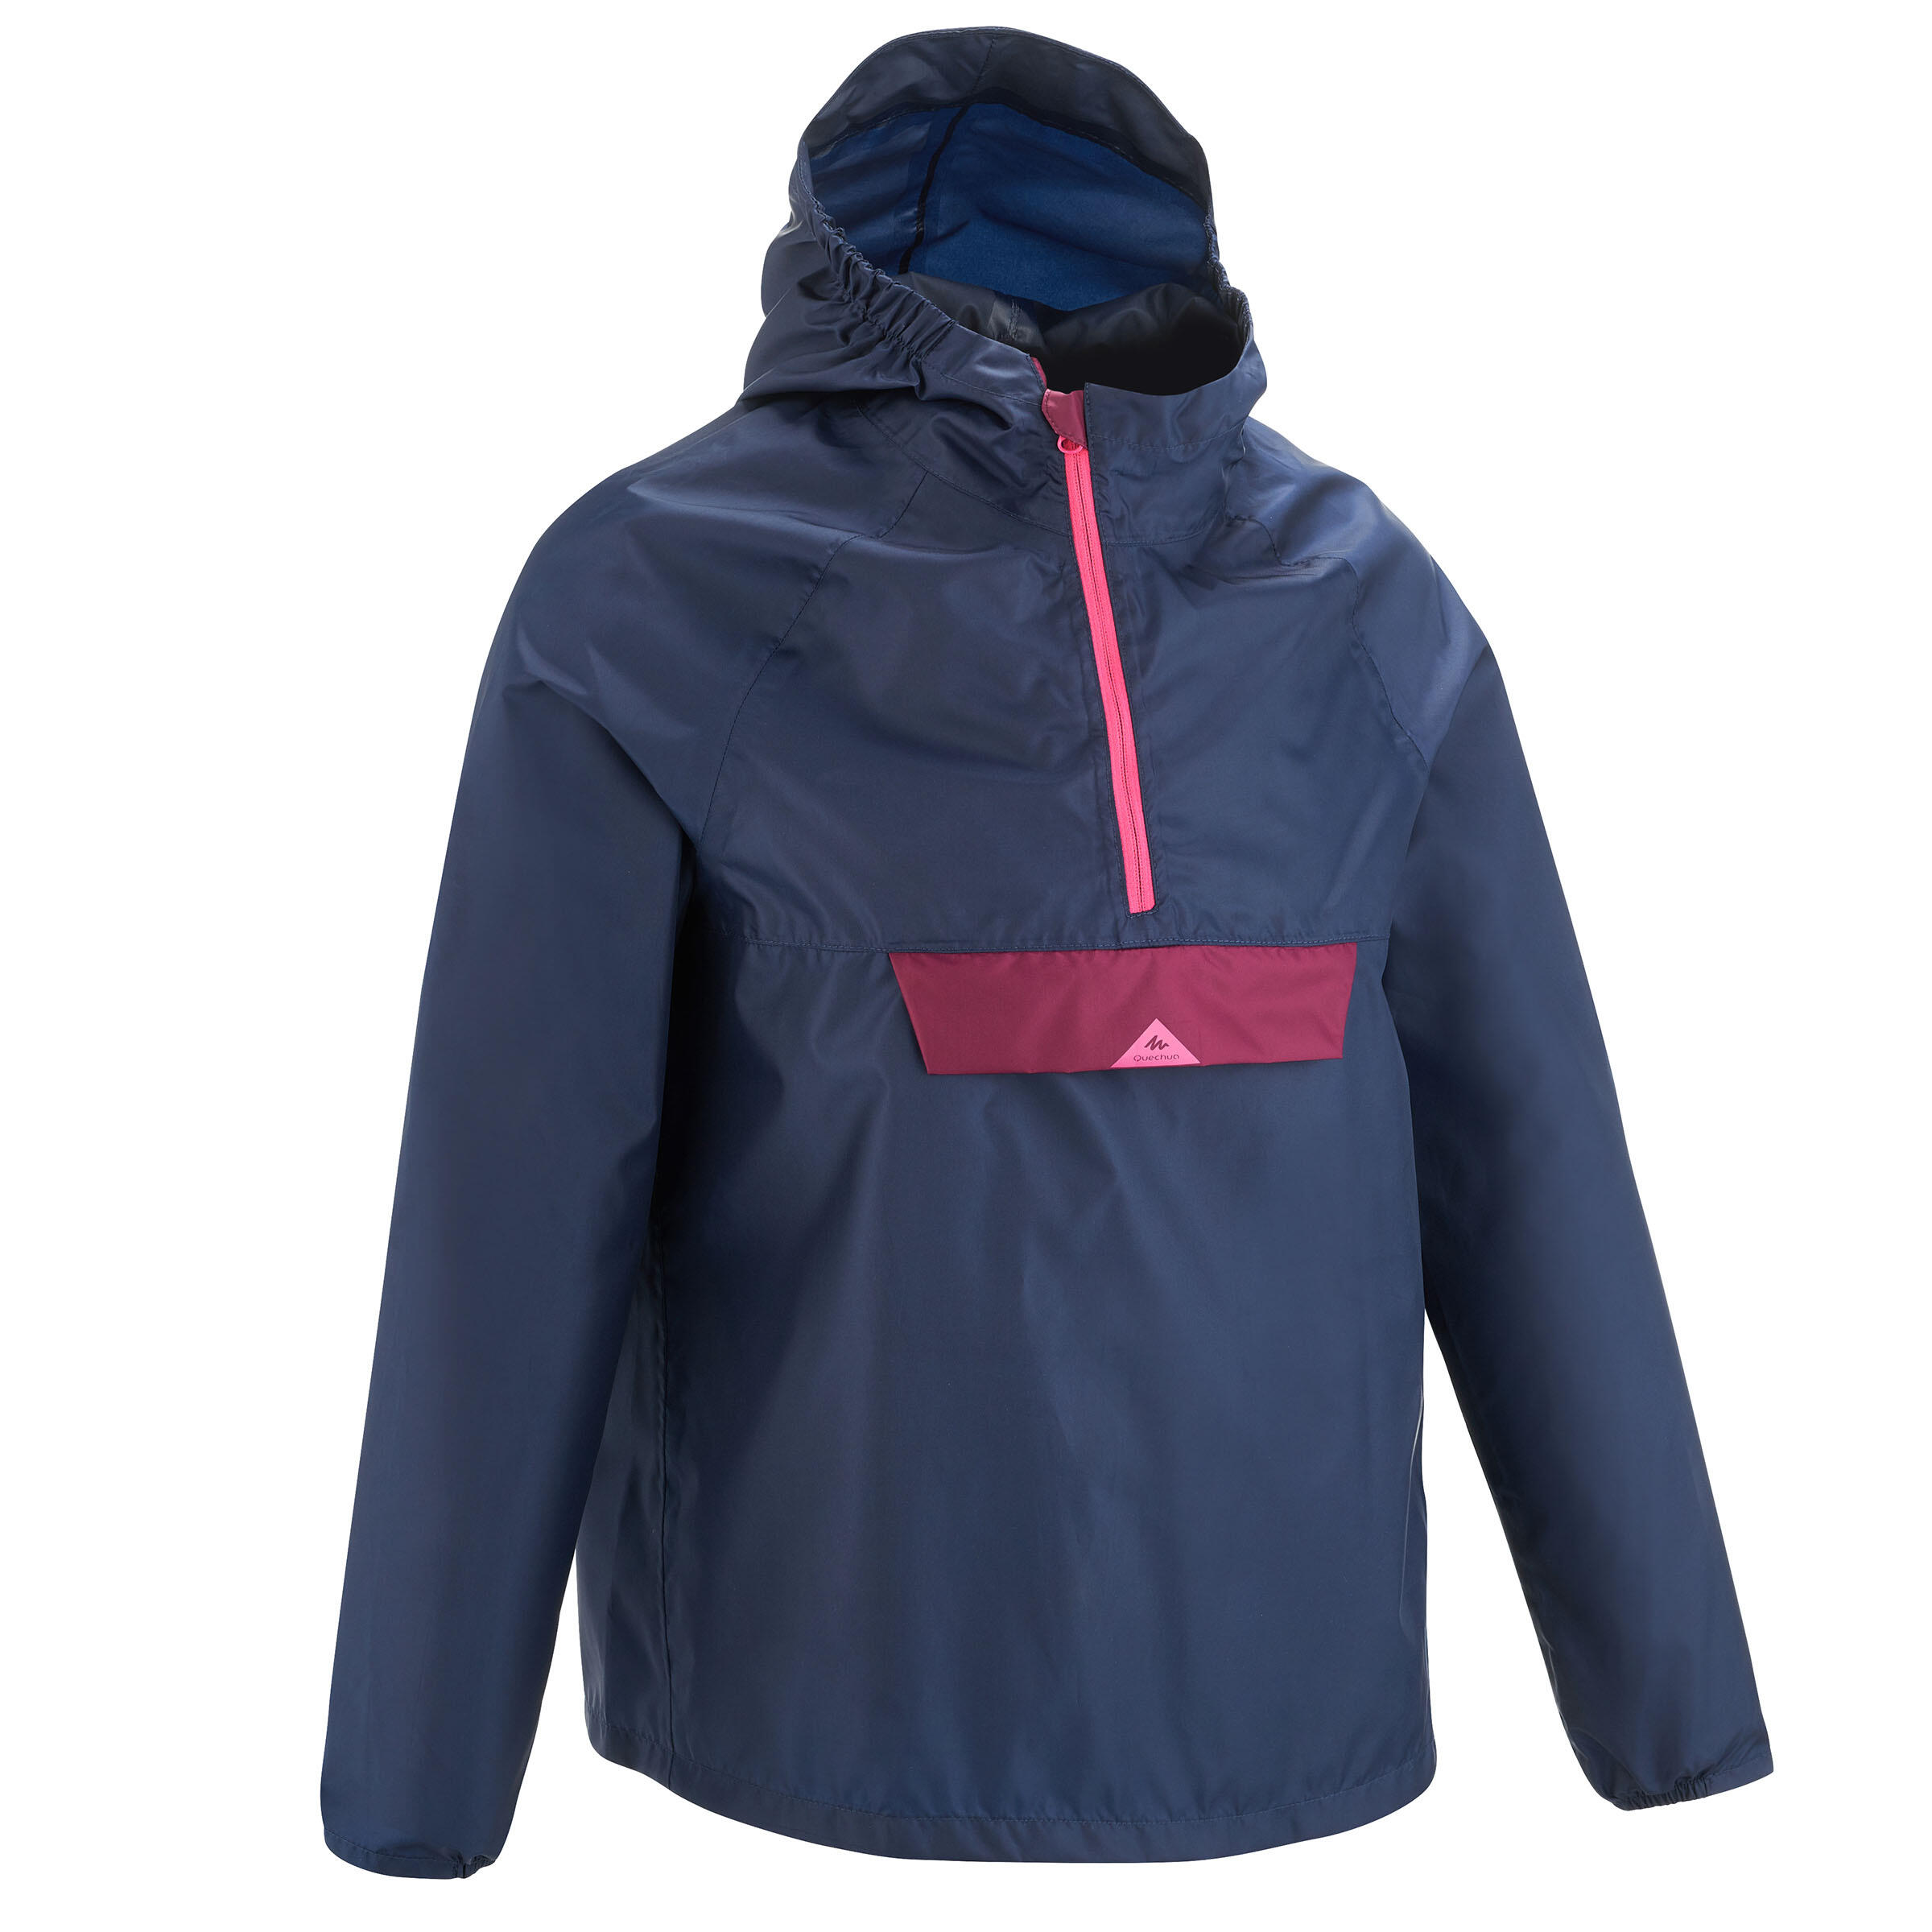 Kids' Waterproof Winter Jacket - MH 100 Navy Blue/Pink - Navy blue -  Quechua - Decathlon